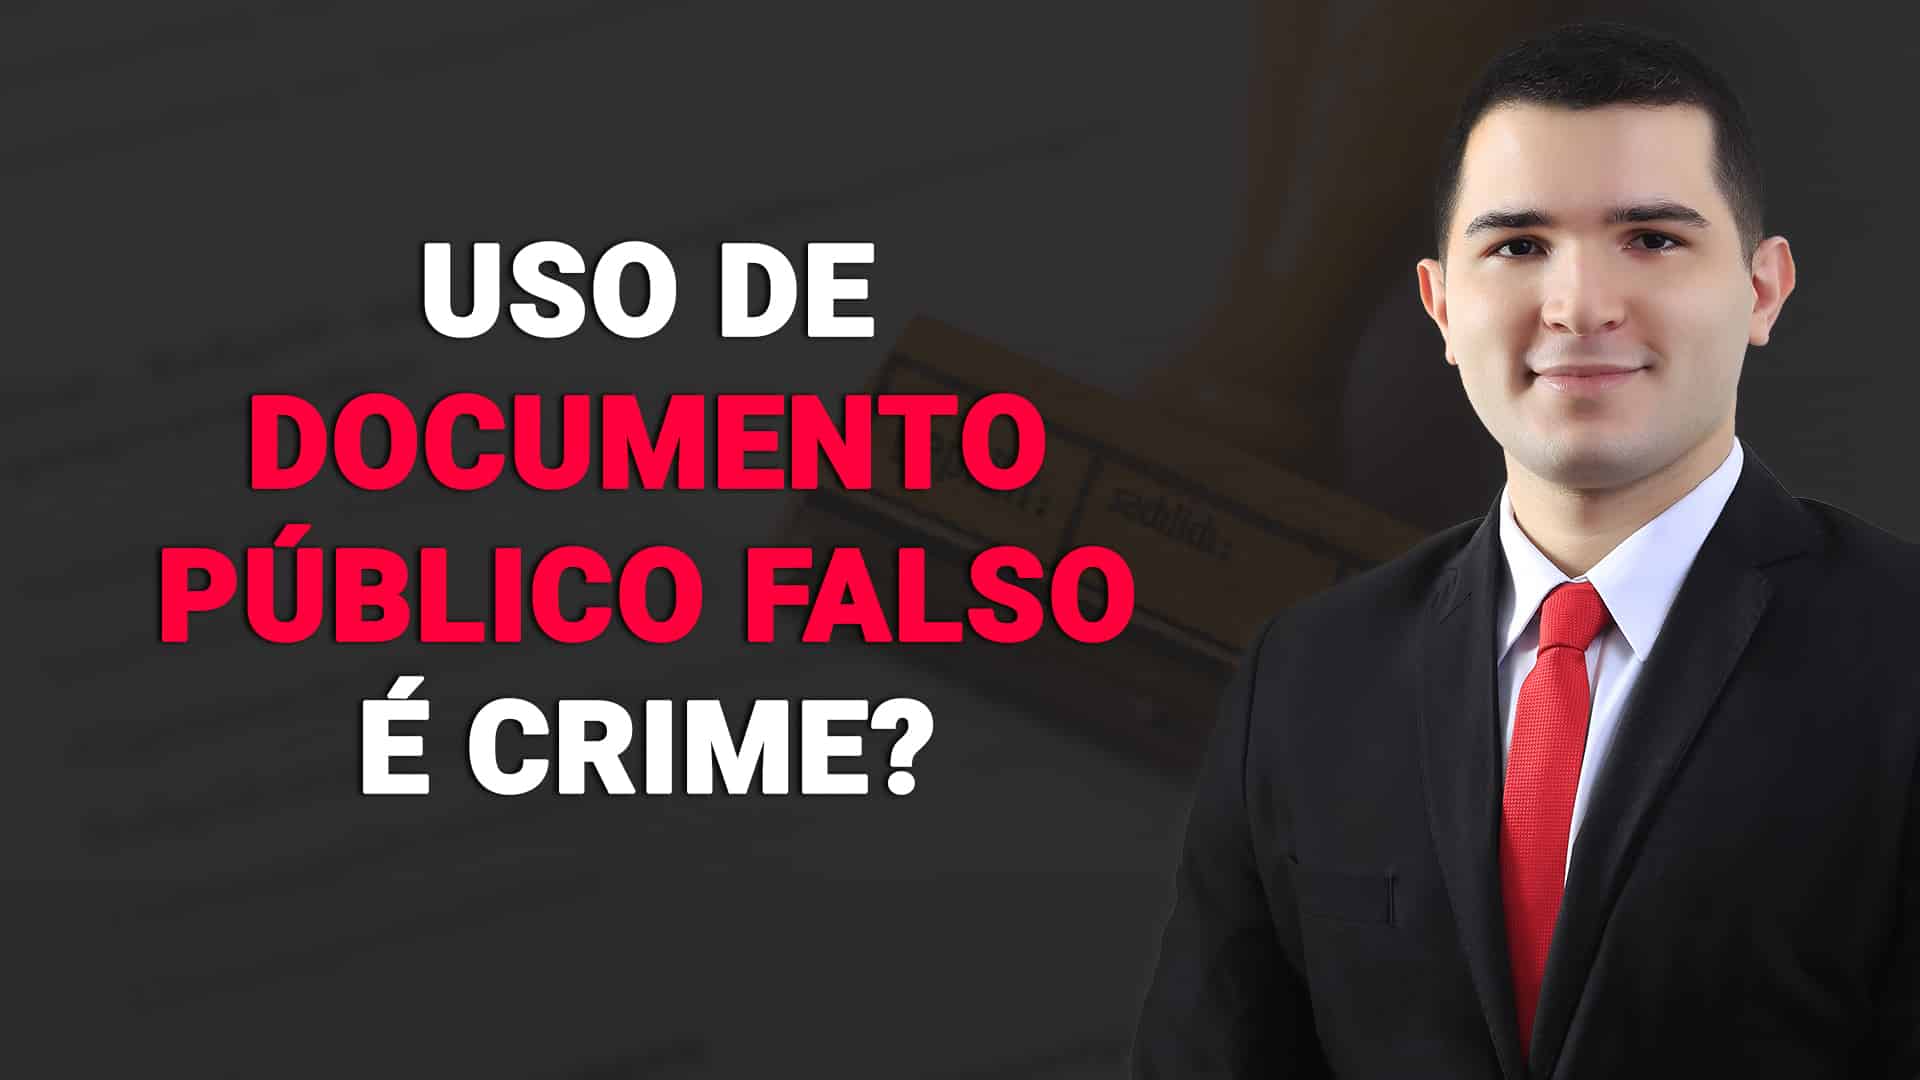 You are currently viewing Duas teses defensivas CURIOSAS para o crime de uso de documento público falso!